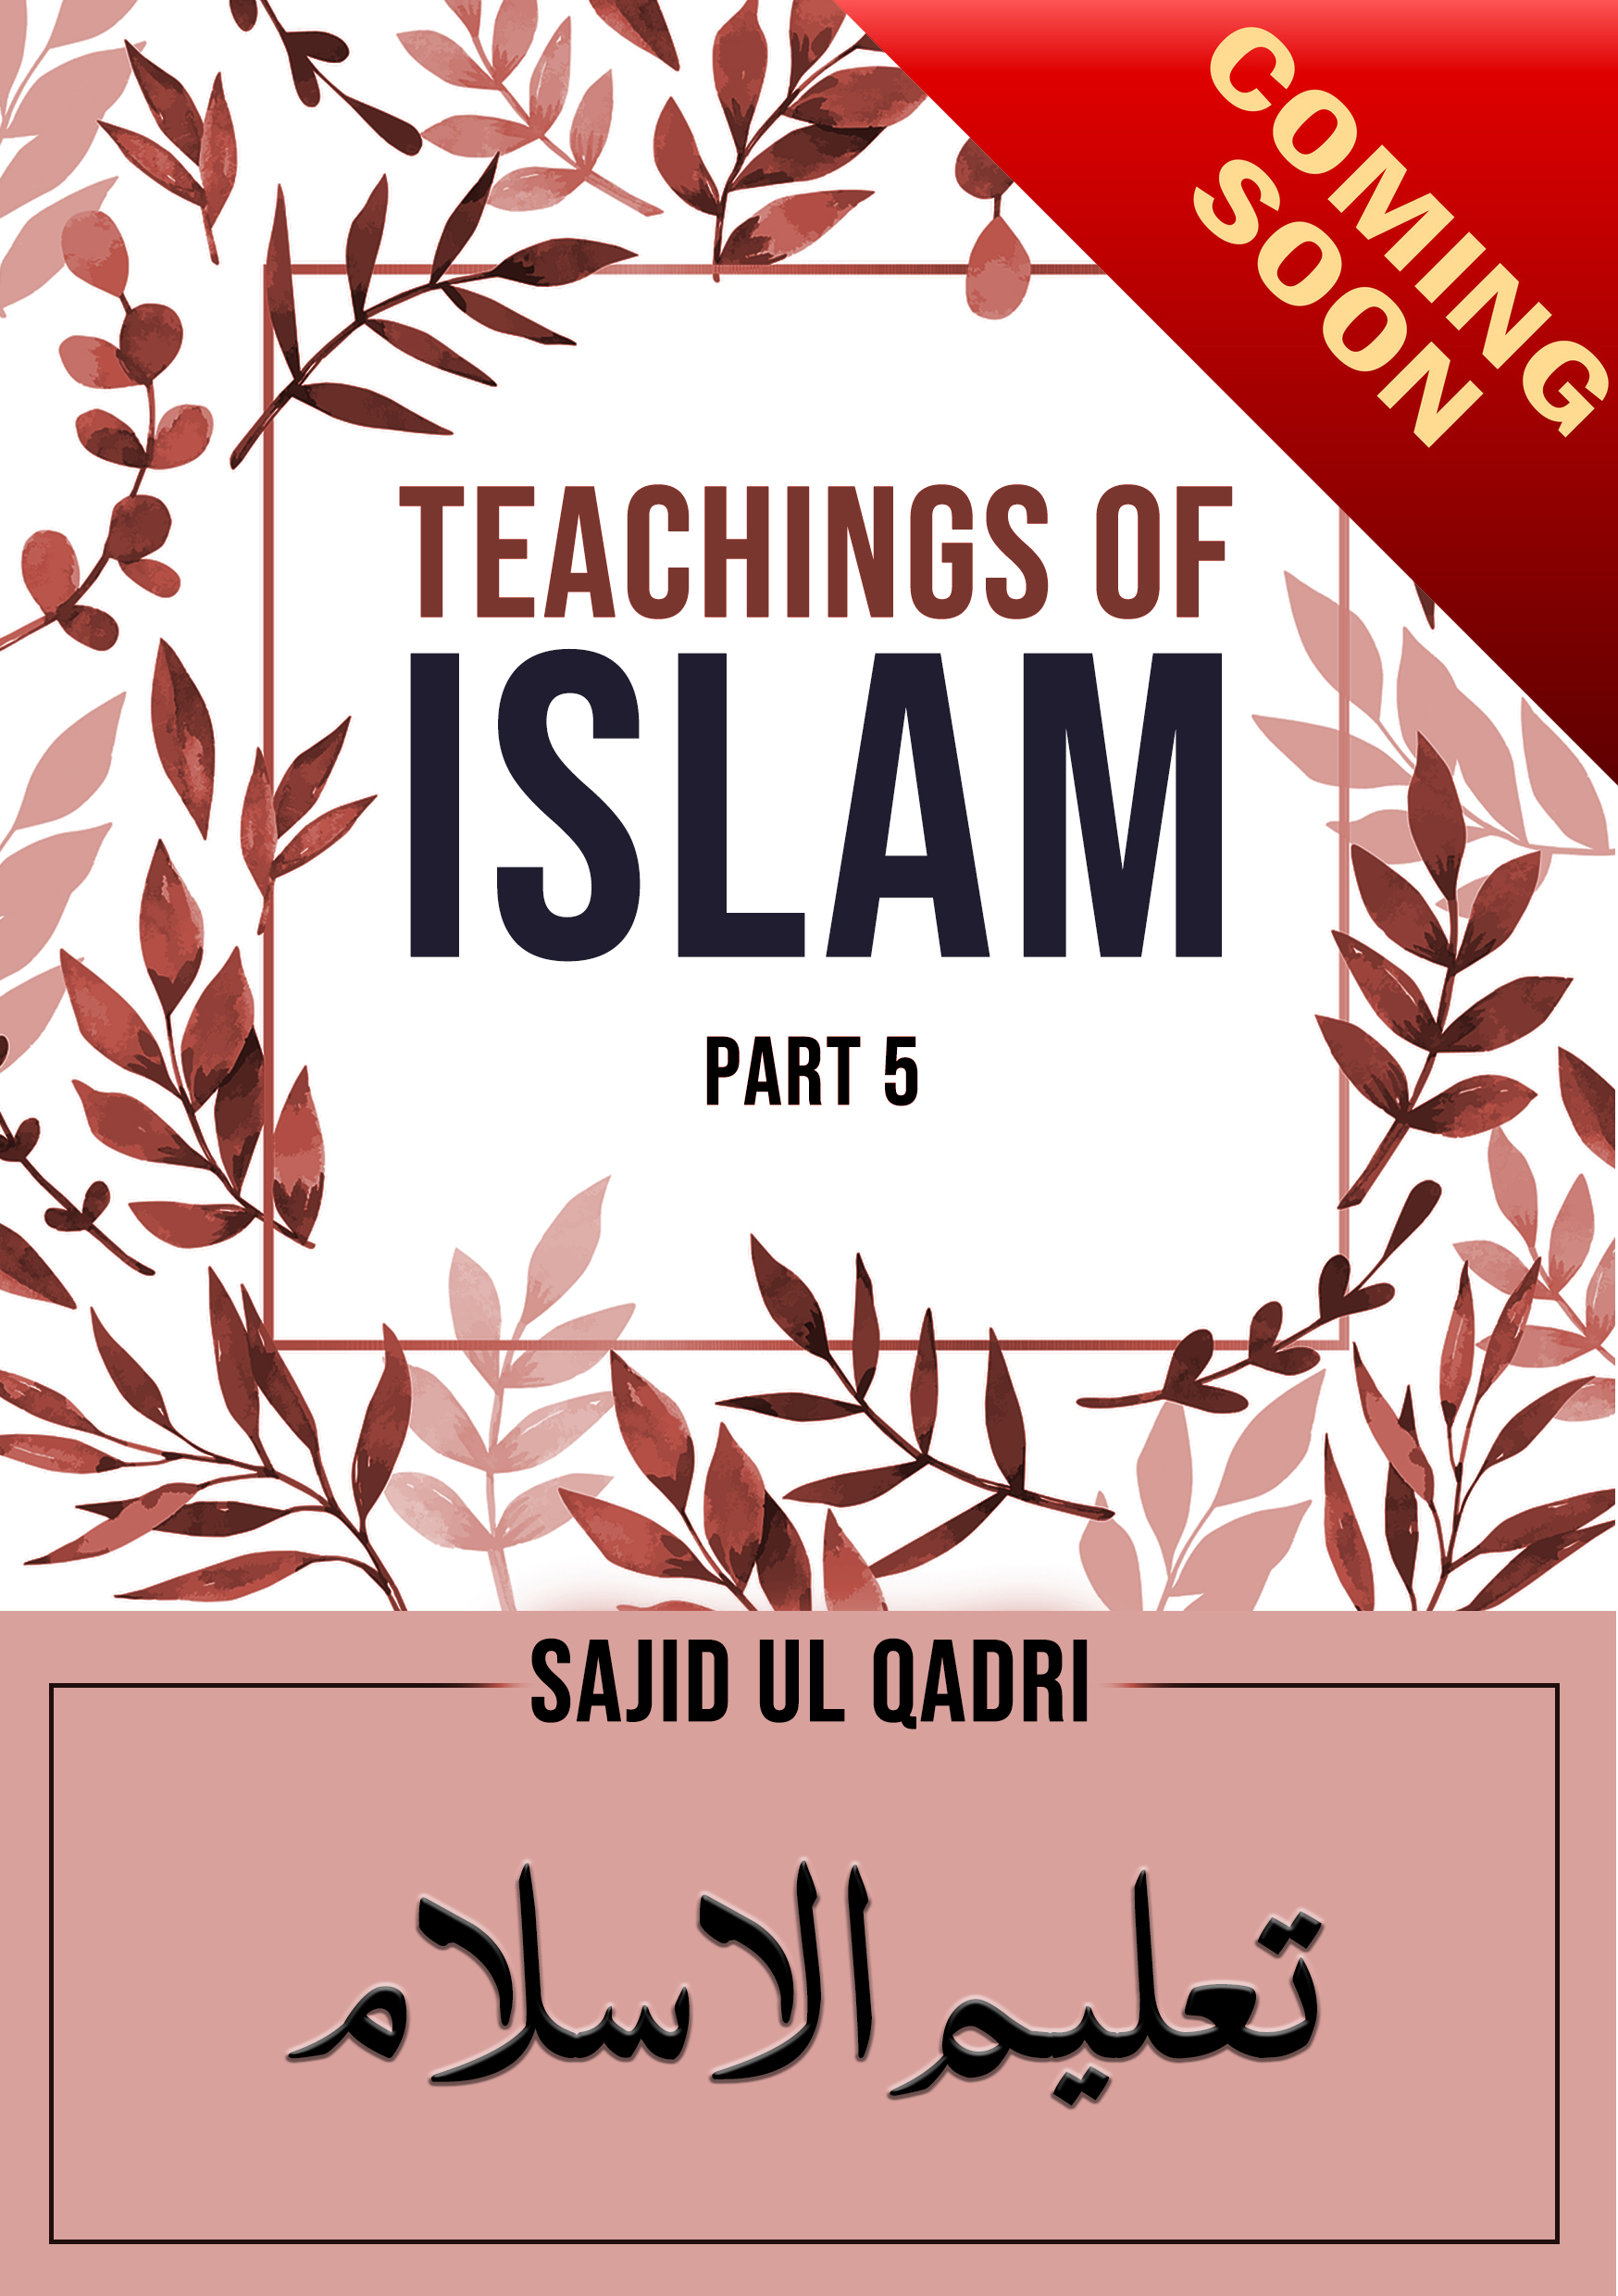 Teachngs of Islam part5